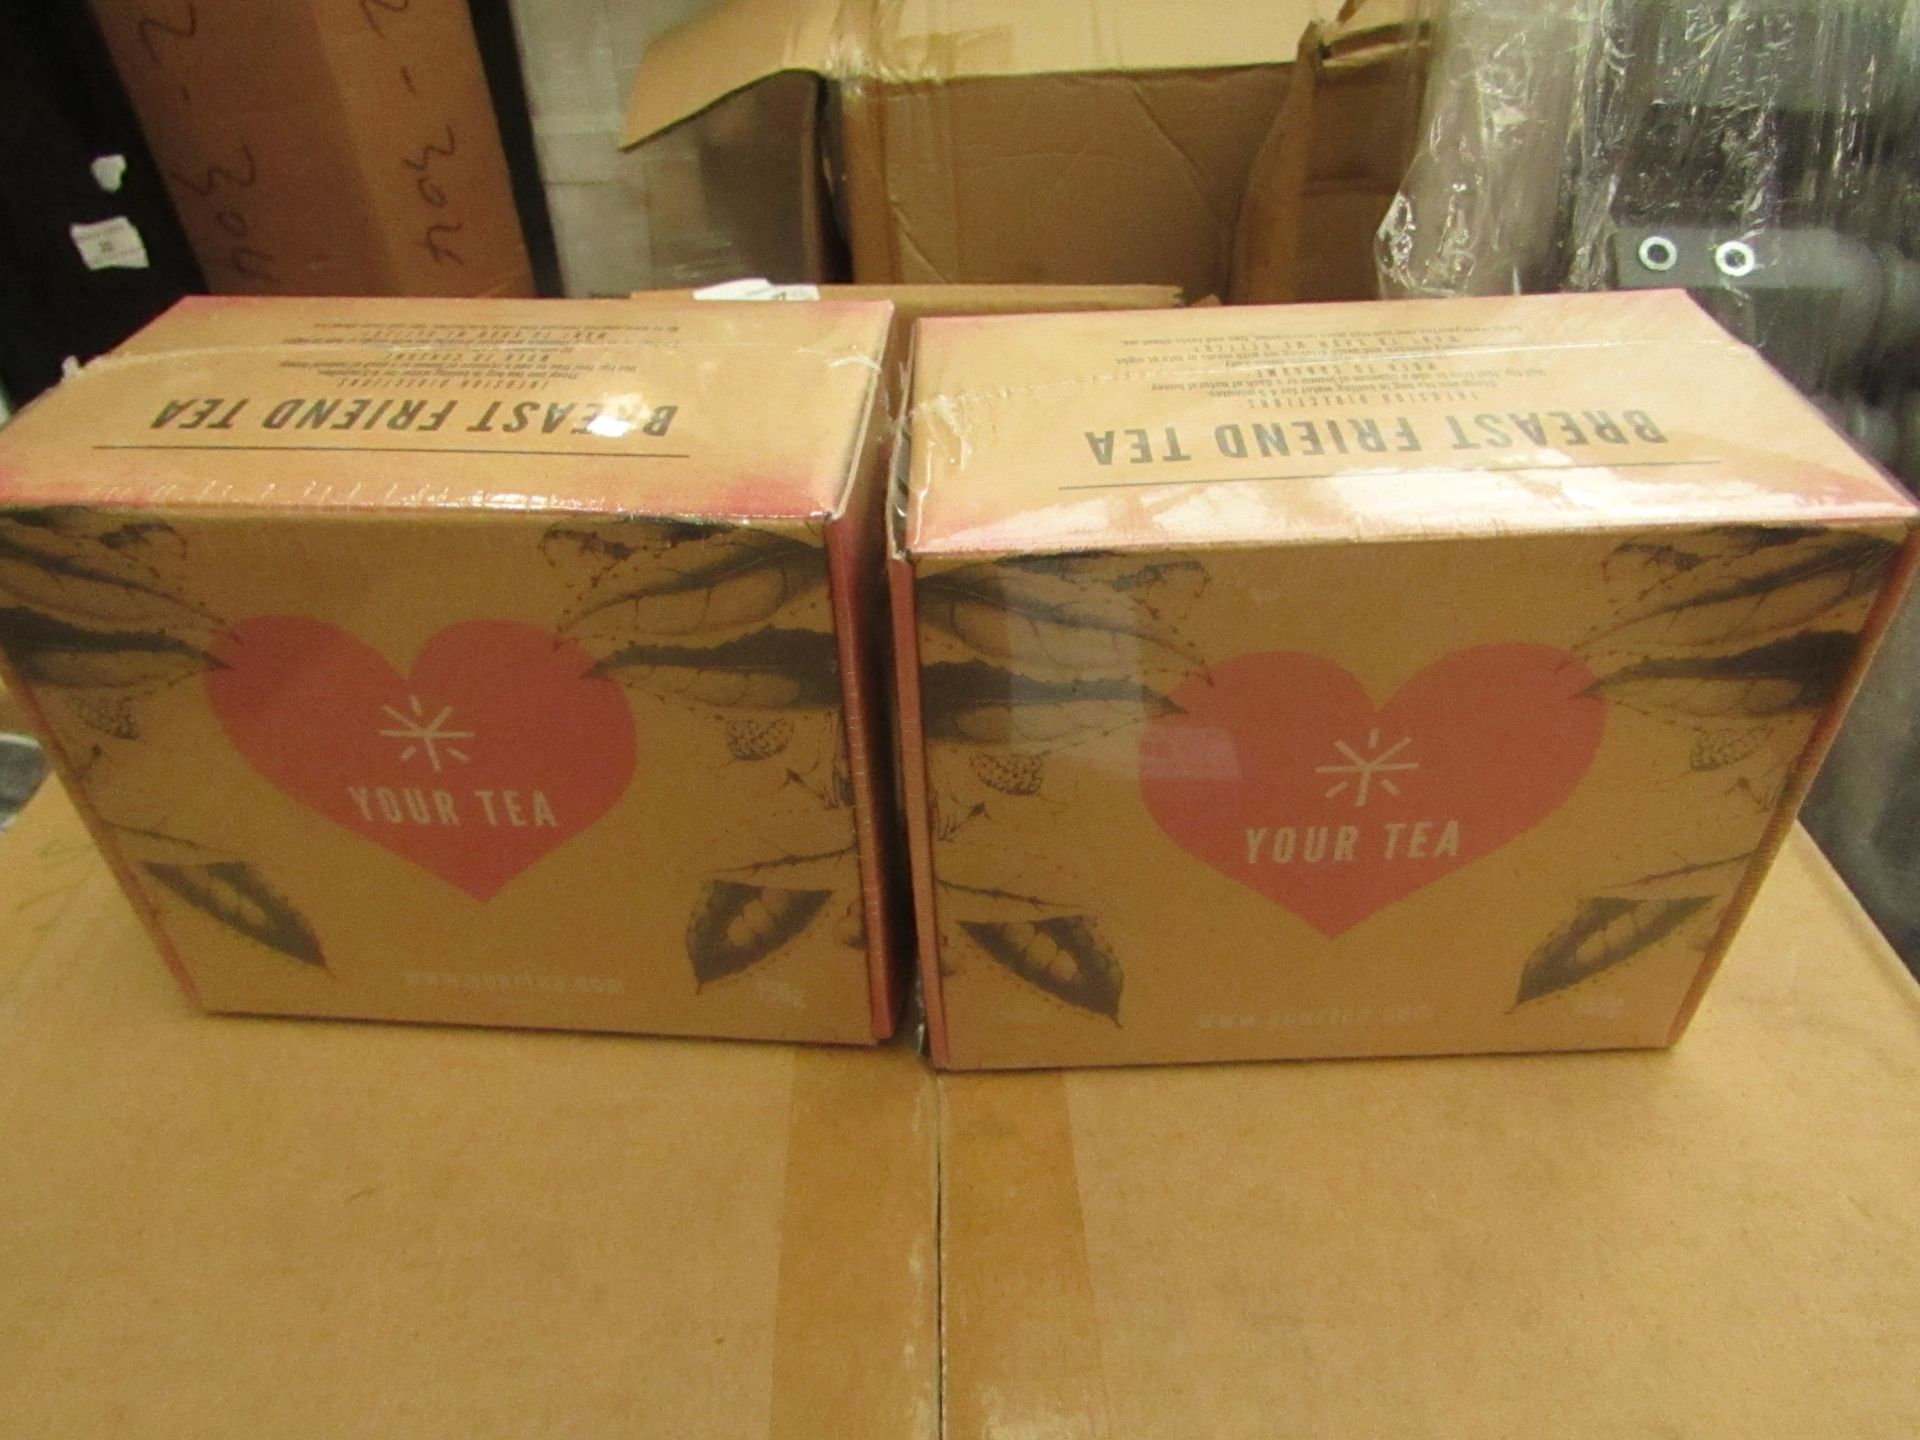 2x Boxes of YourTea - 60 tea bags per box.